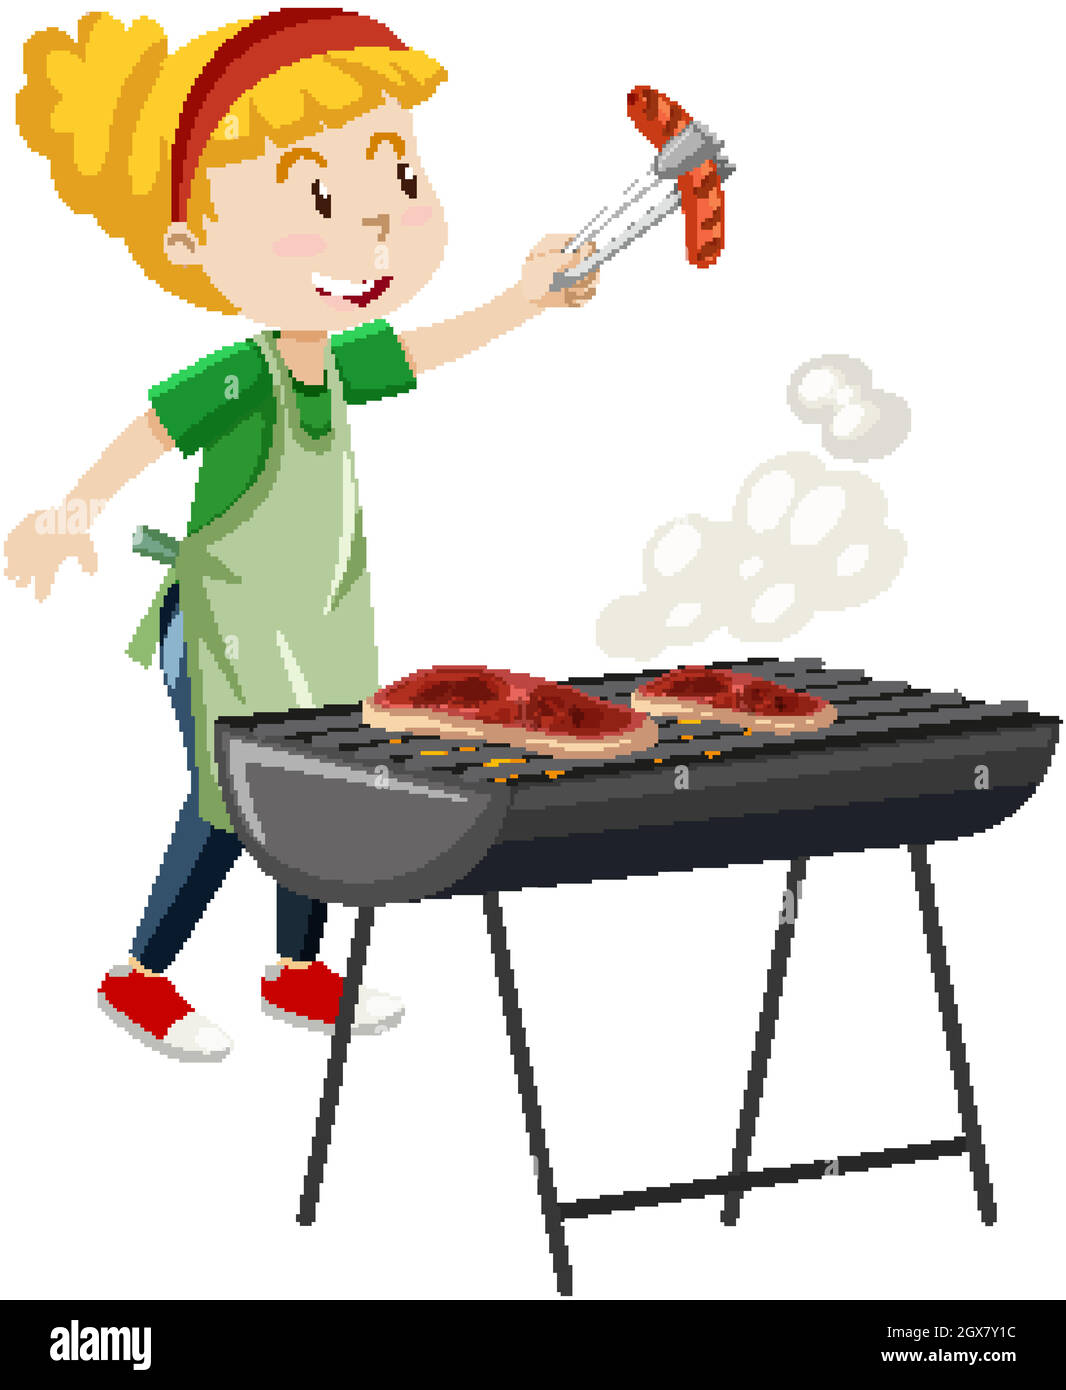 Mädchen Kochen Grill Steak Cartoon-Stil auf weißem Hintergrund isoliert Stock Vektor